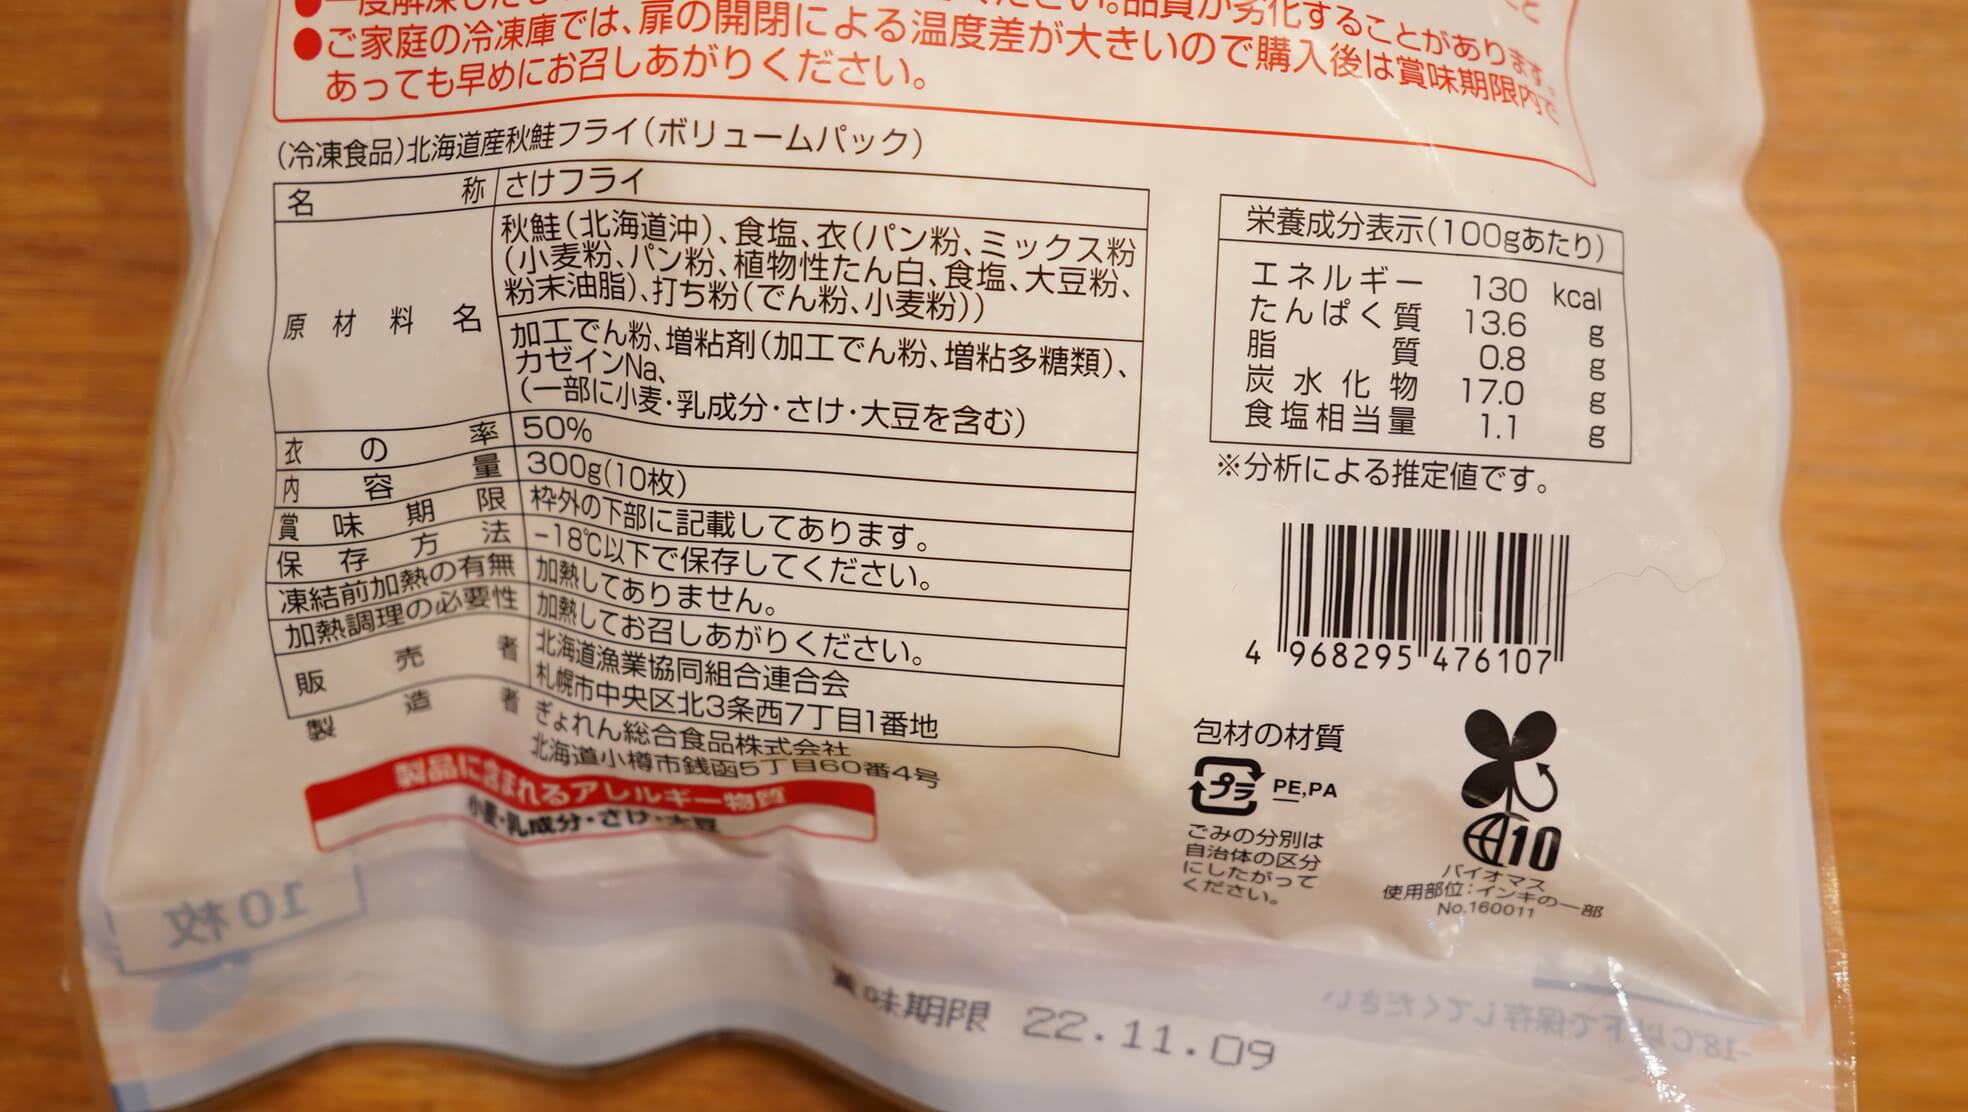 生協宅配で注文できる北海道漁連「秋鮭フライ」の栄養成分表の写真